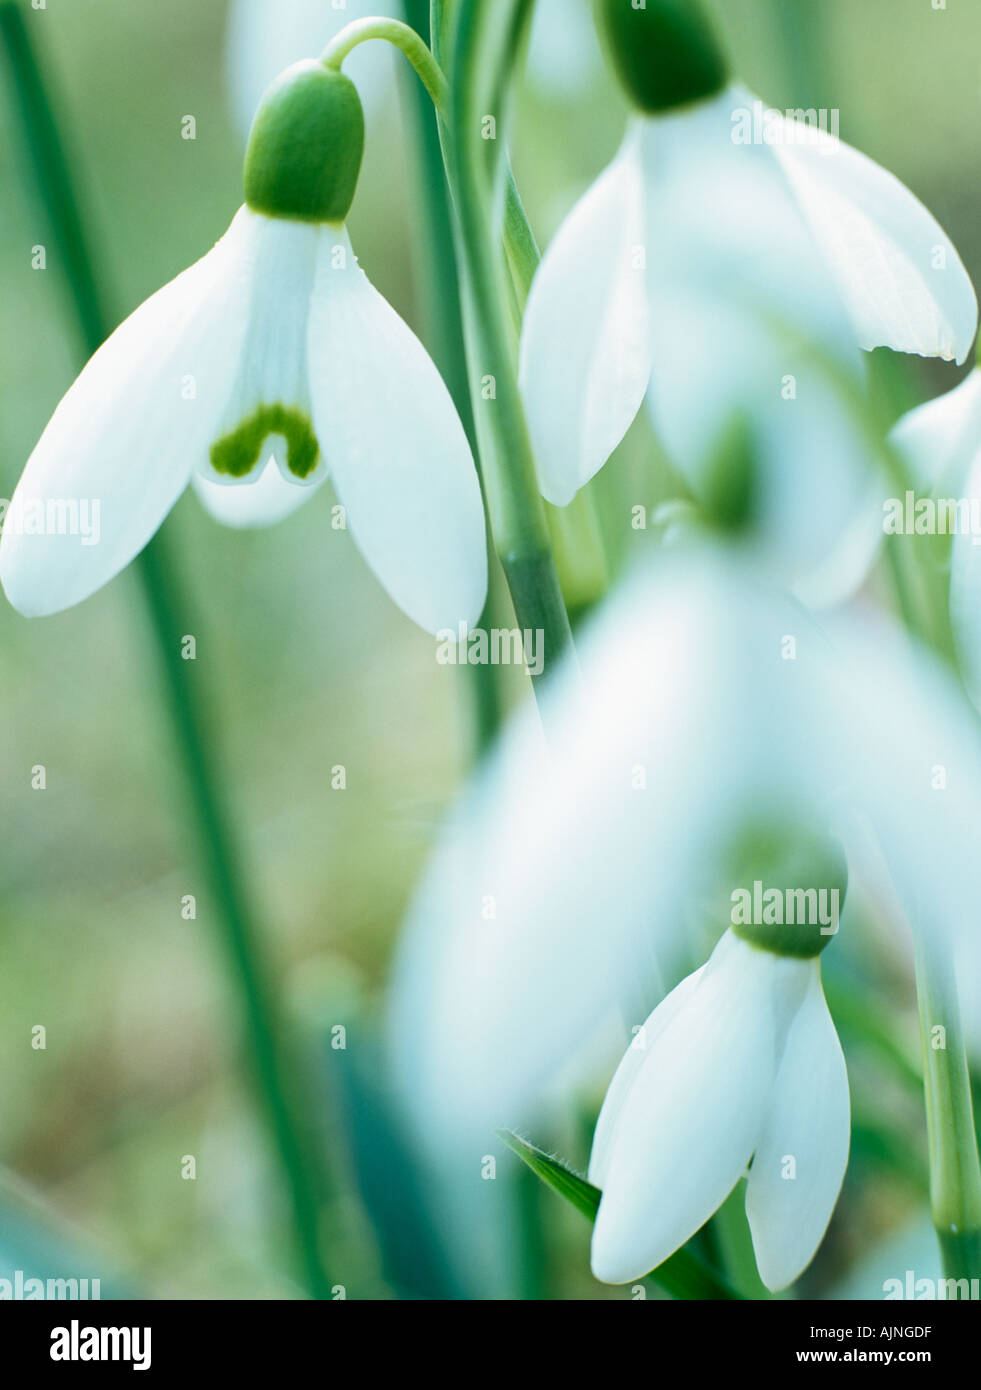 Perce-neige Galanthus nivalis sauvages indigènes close up de fleurs blanches à l'avant-plan de fleur en hiver. Angleterre Royaume-uni Grande-Bretagne Banque D'Images